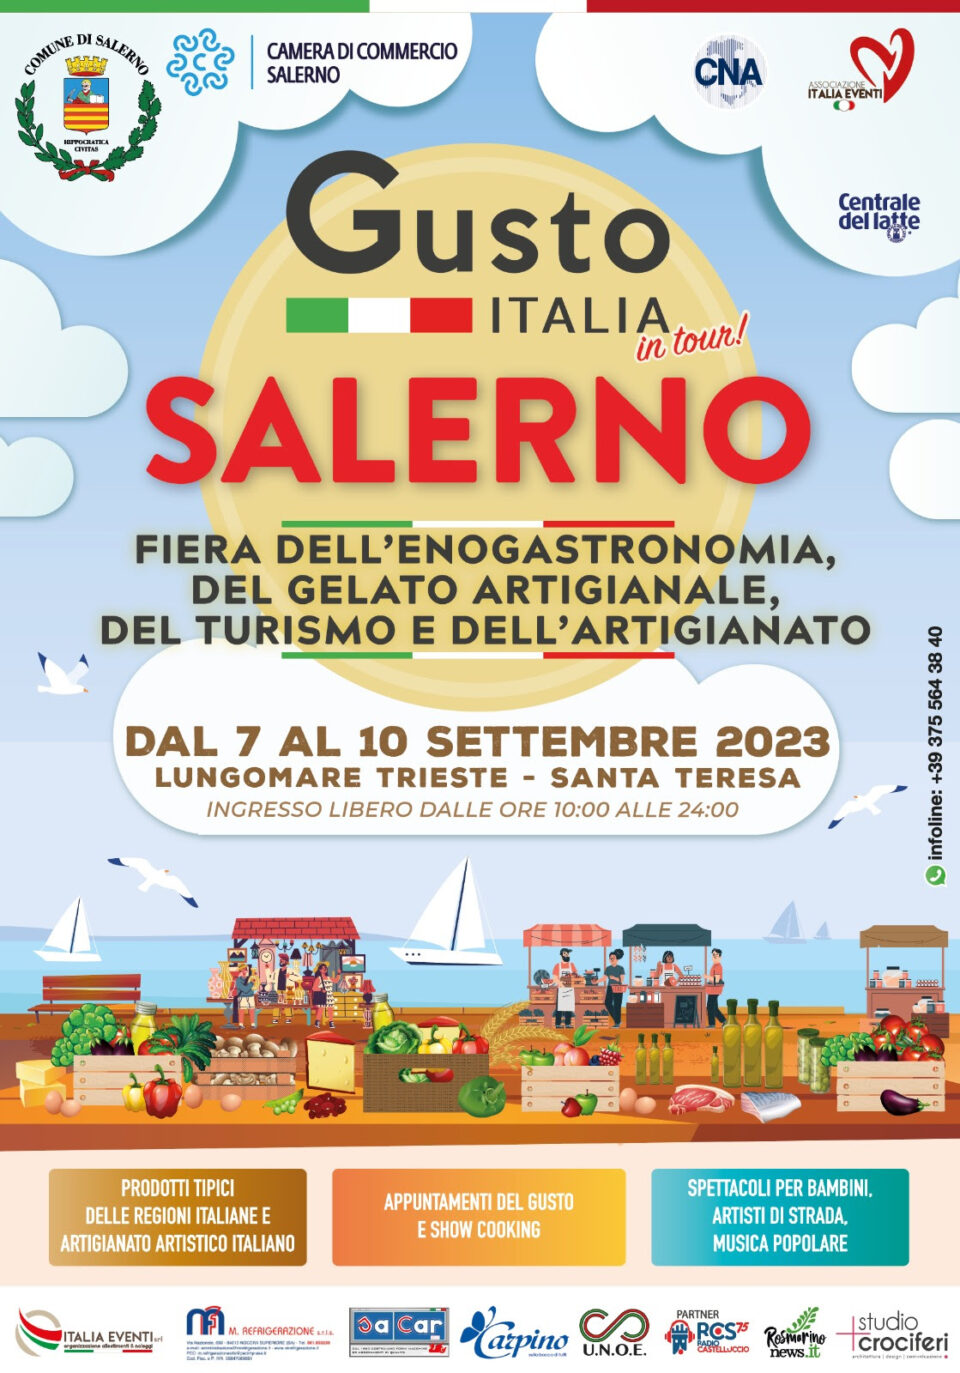 Gusto Italia 2023 a Salerno: la fiera dell'enogastronomia